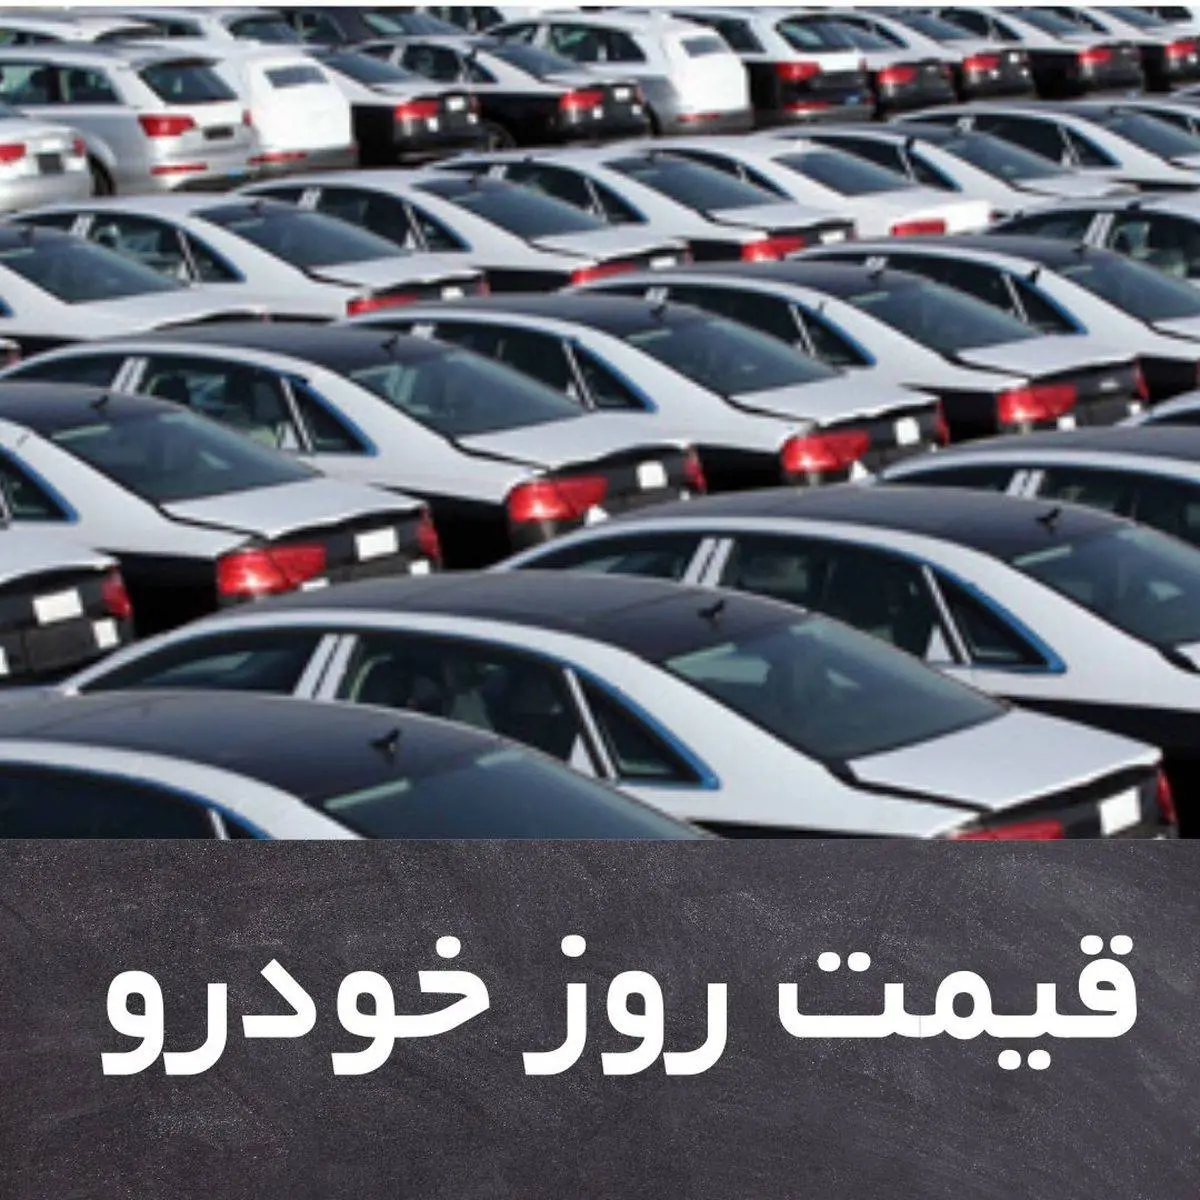 قیمت روز خودرو یکشنبه 19 بهمن + جدول

